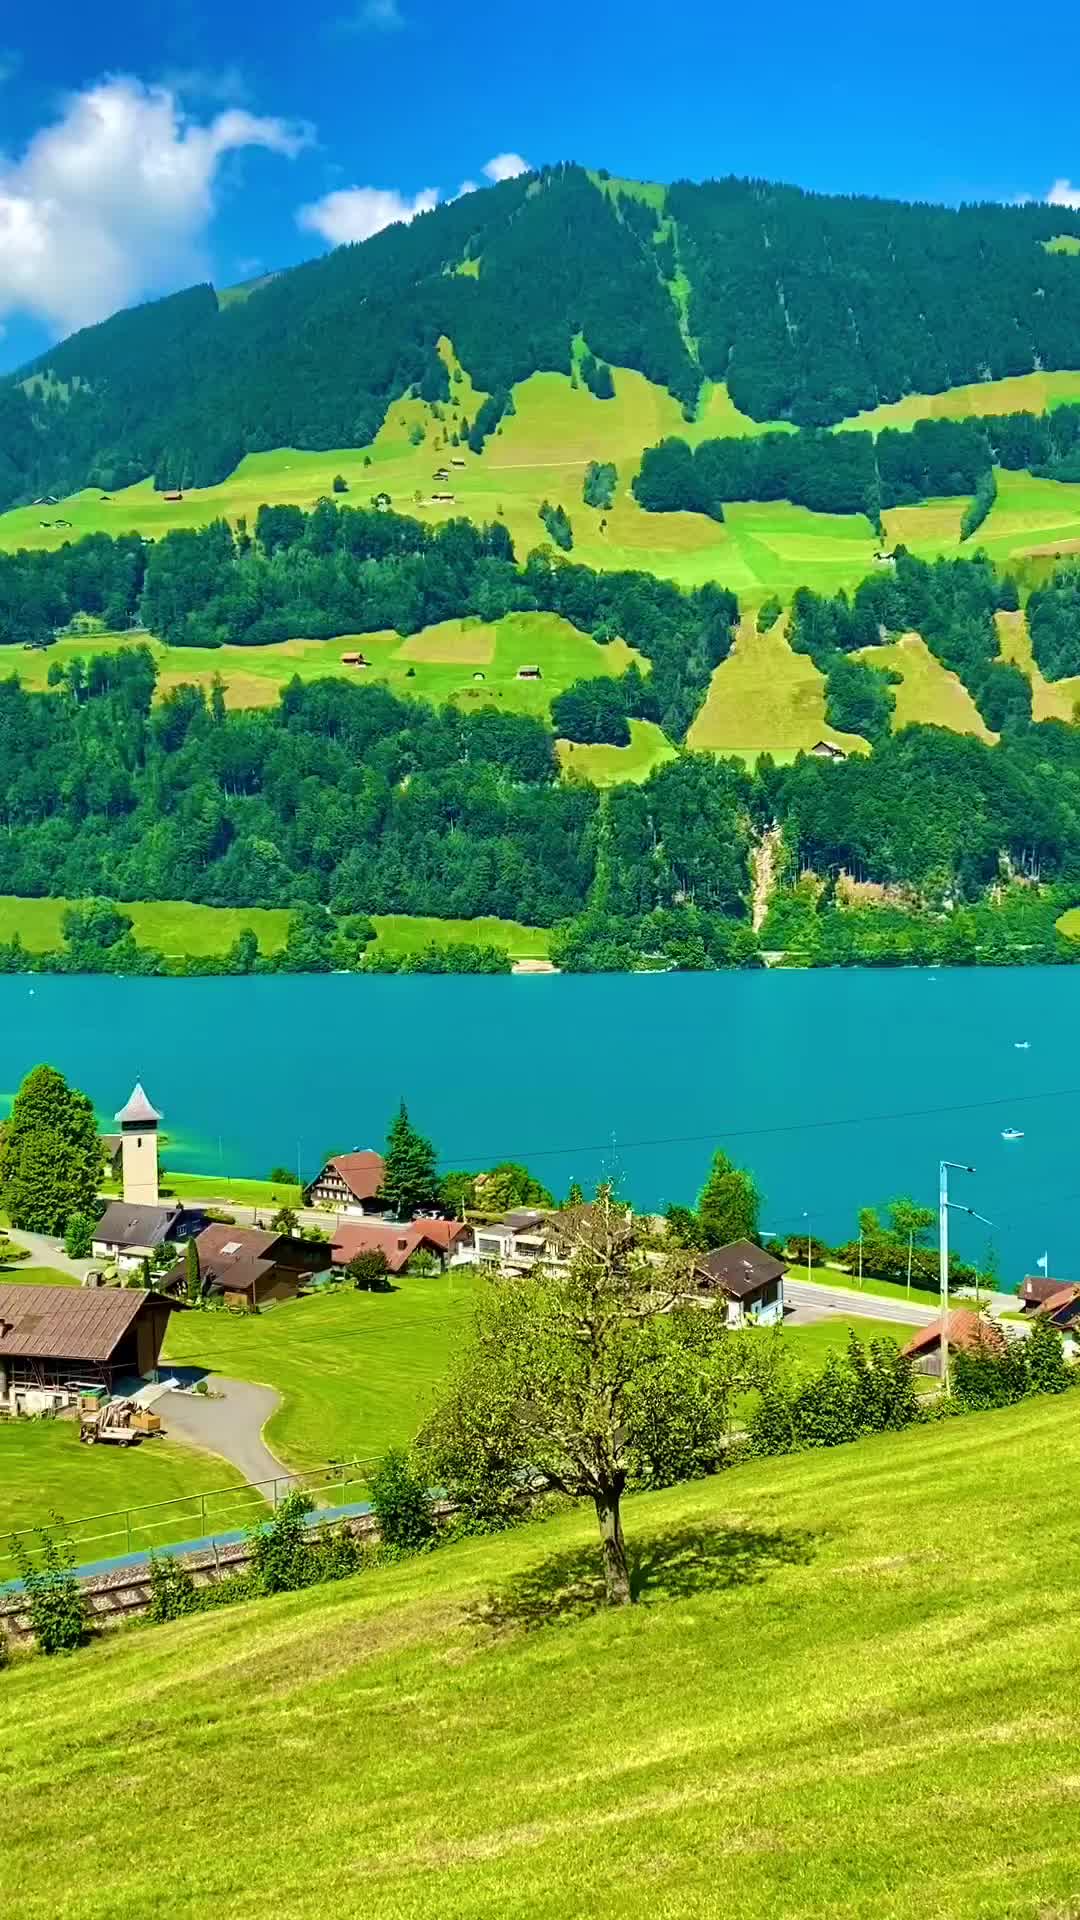 🇨🇭SUMMER IN LUNGERN🇨🇭

🎥 @syifa_in_switzerland

#lungern #syifainswitzerland #beautifuldestinations #inlovewithswitzerland #ineedswitzerland #bestofswitzerland #beautifuldestinations #beautifulswitzerland #swissvillage #swissalpen #alps #swissalps #myswitzerland #İsviçre #suíça #suisse #suiza #schweiz #schweizeralpen #visitswitzerland  #visitswiss  #exploreswitzerland  #switzerland_vacations  #switzerland🇨🇭 #switzerland #swisslandscape #swissnature  #igersswitzerland  #switzerlandmountains